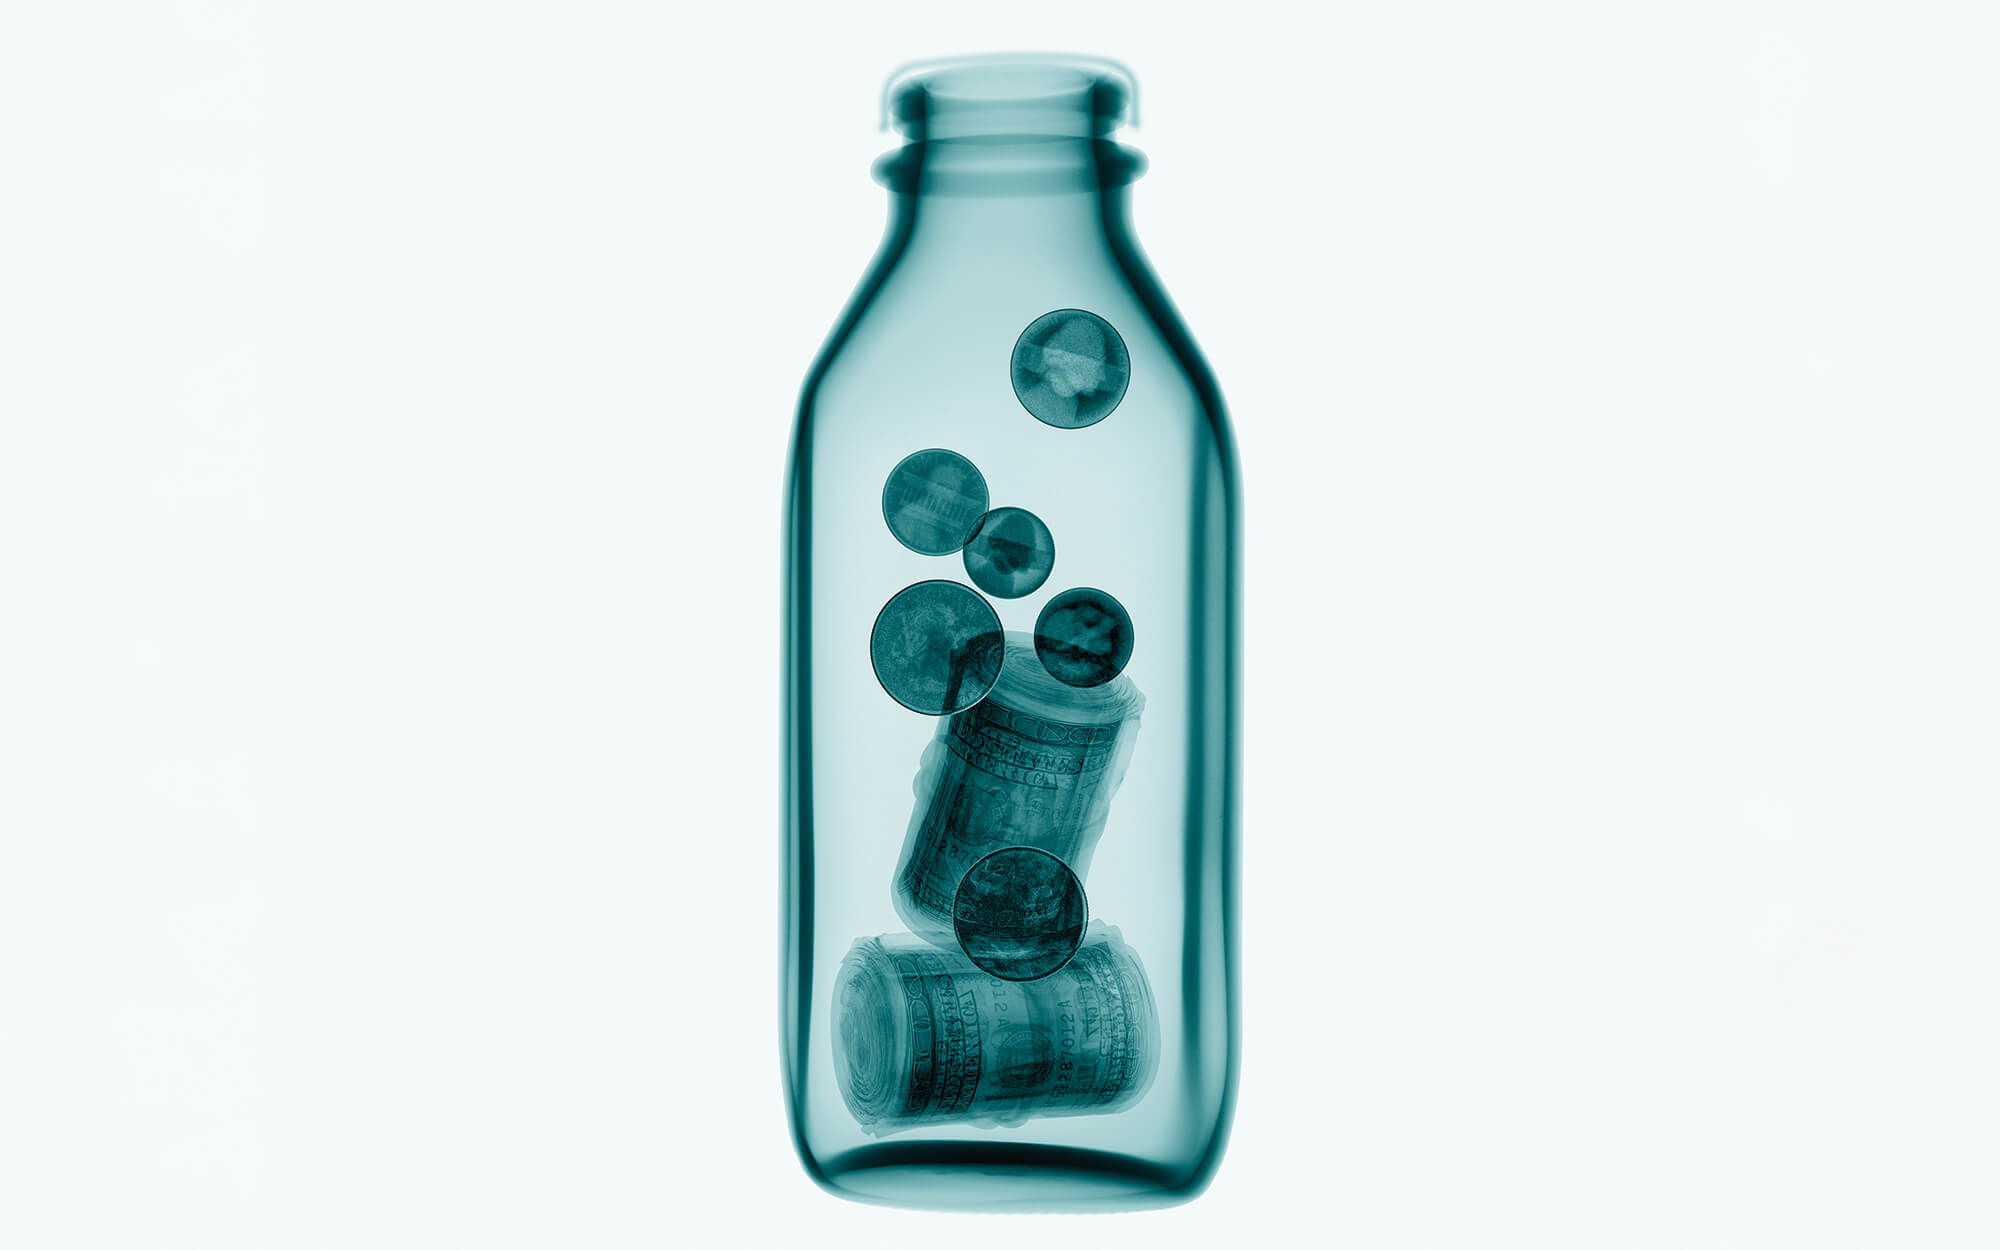 Money in a bottle